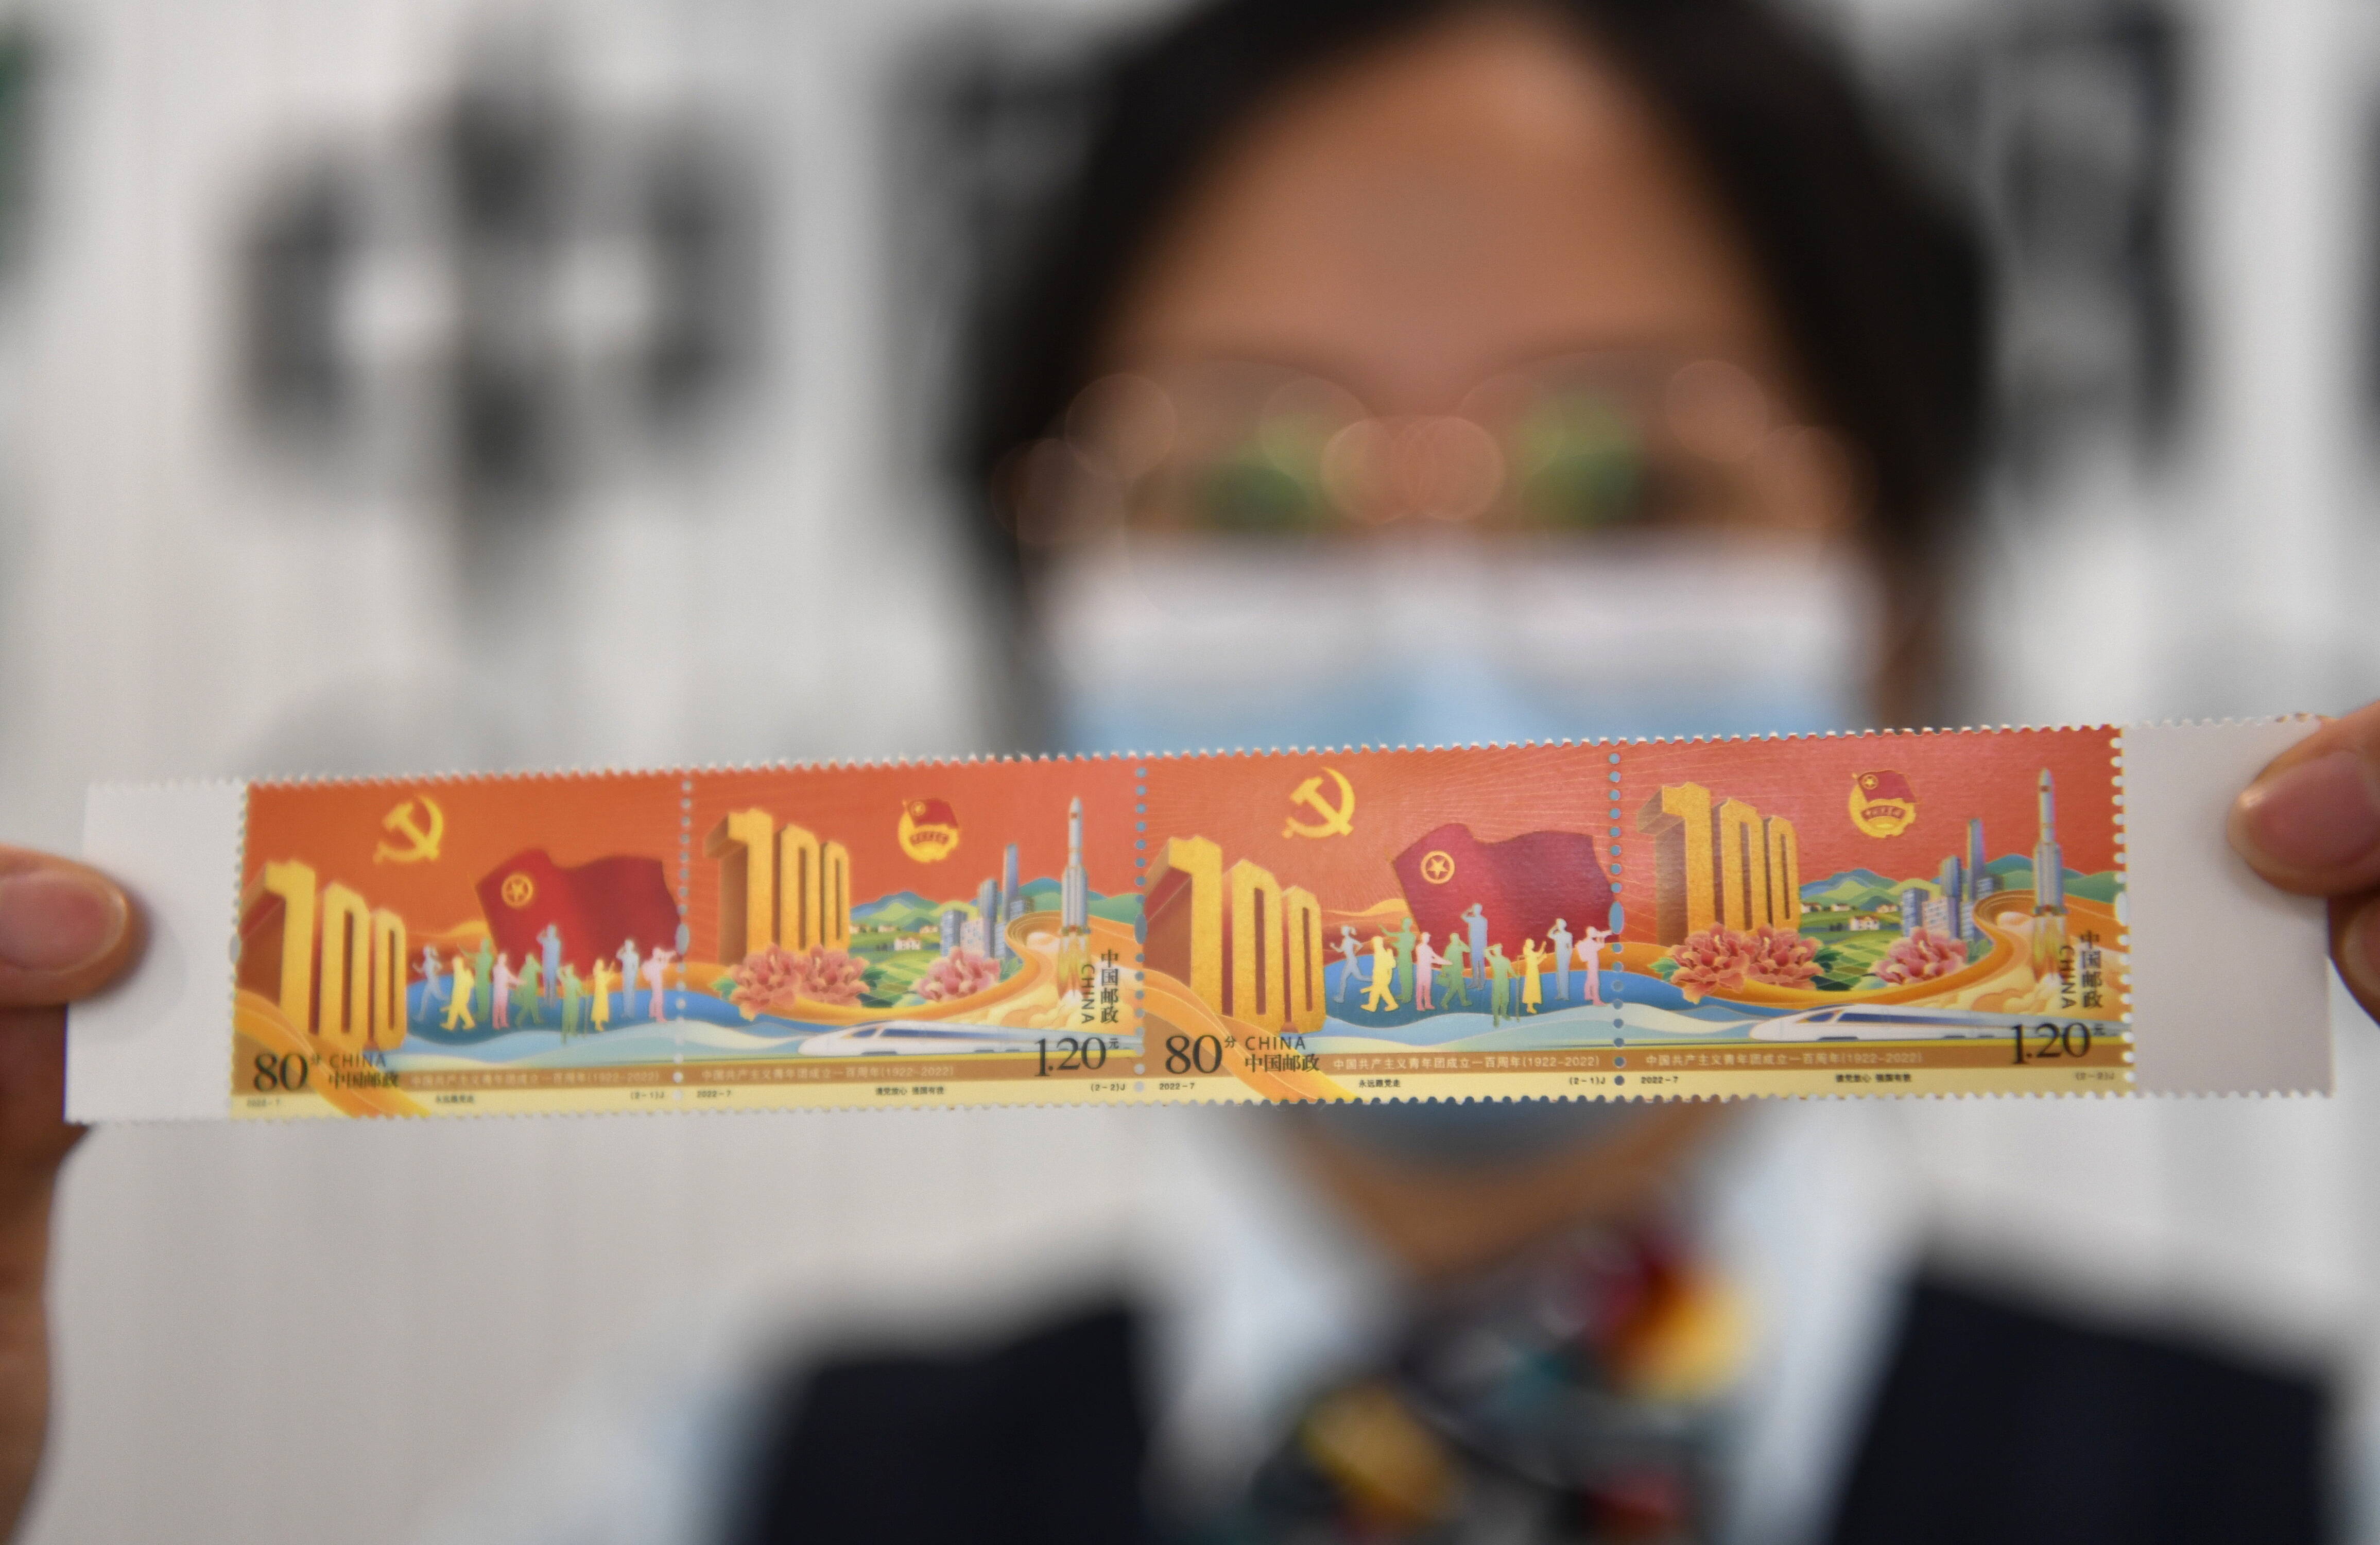 方寸铭记青春 《中国共产主义青年团成立一百周年》纪念邮票发行